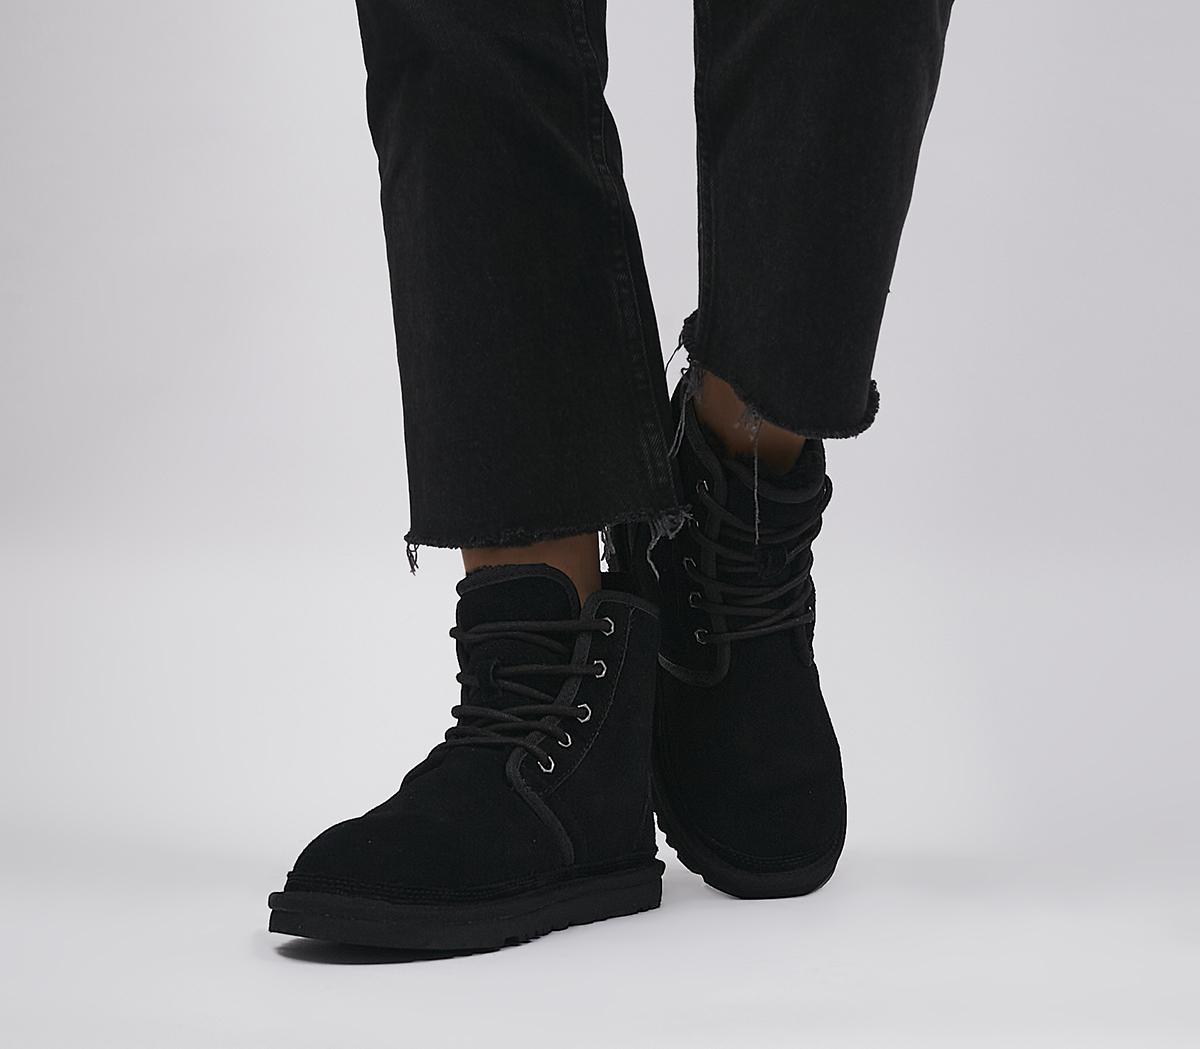 UGG Neumel High Boots Black - Women's Boots